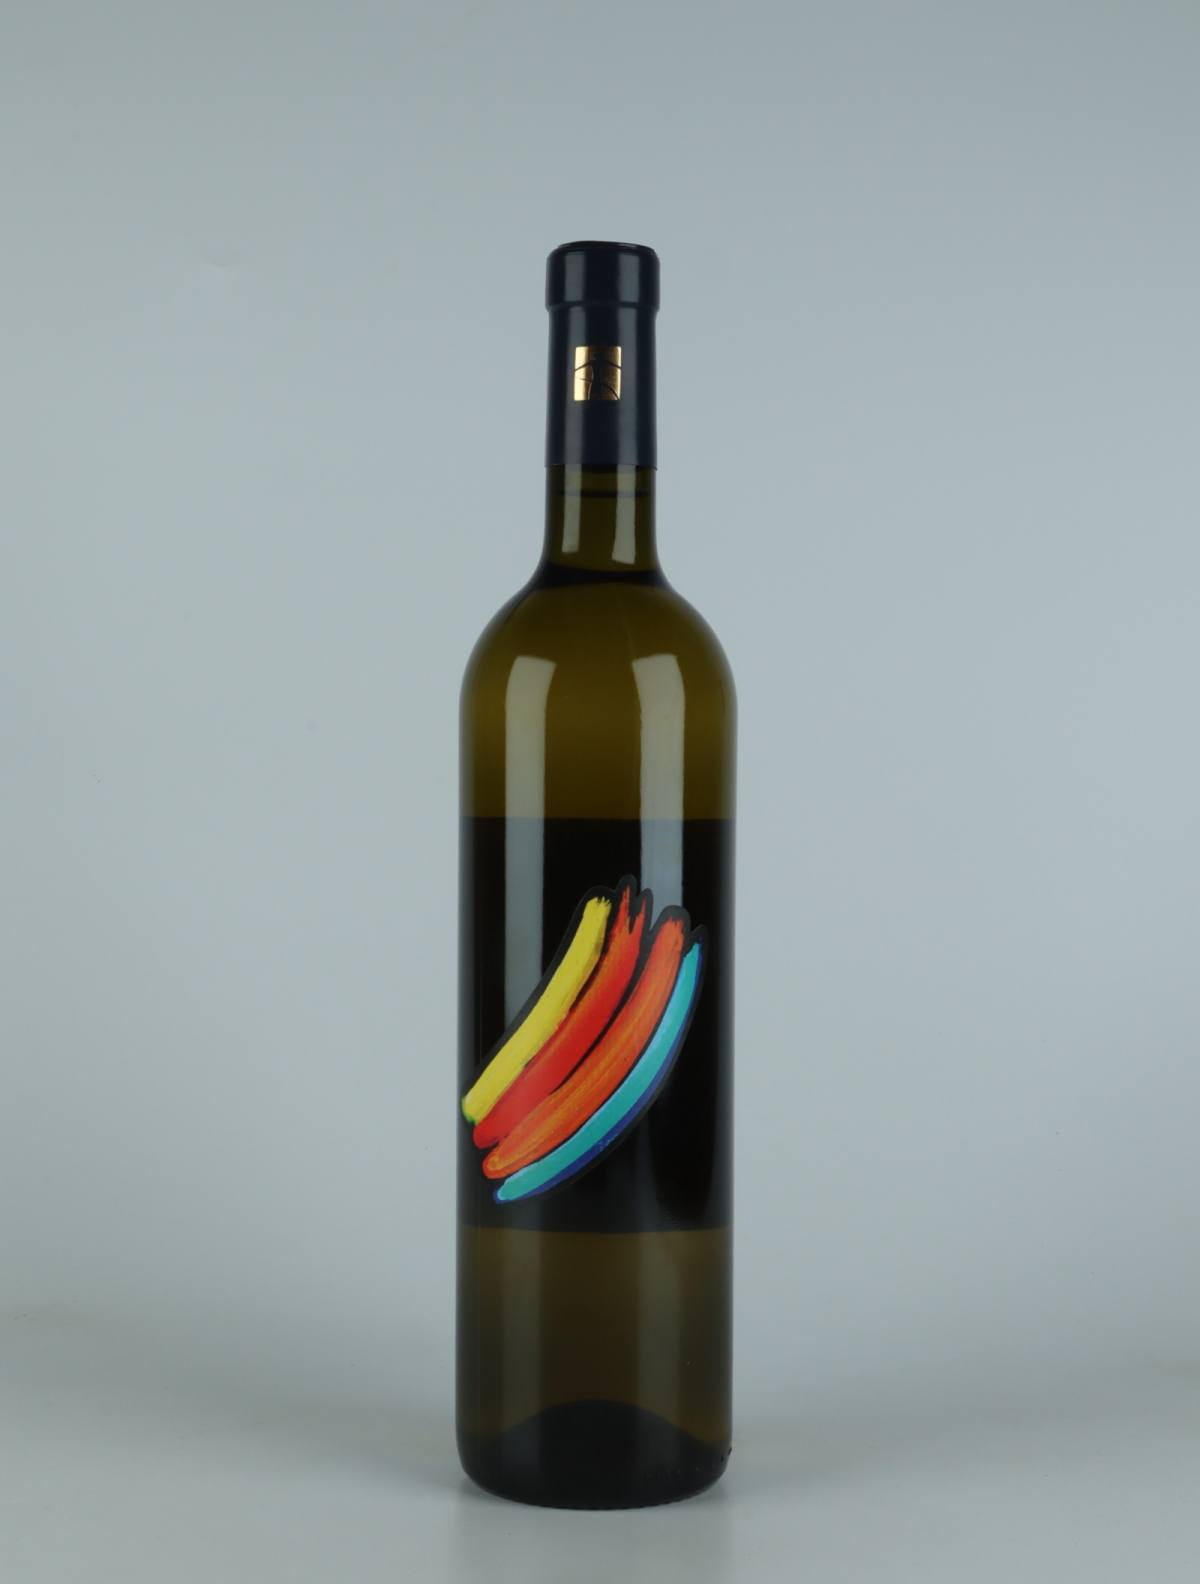 A bottle 2021 Crescendo White wine from Tenuta Selvadolce, Liguria in Italy